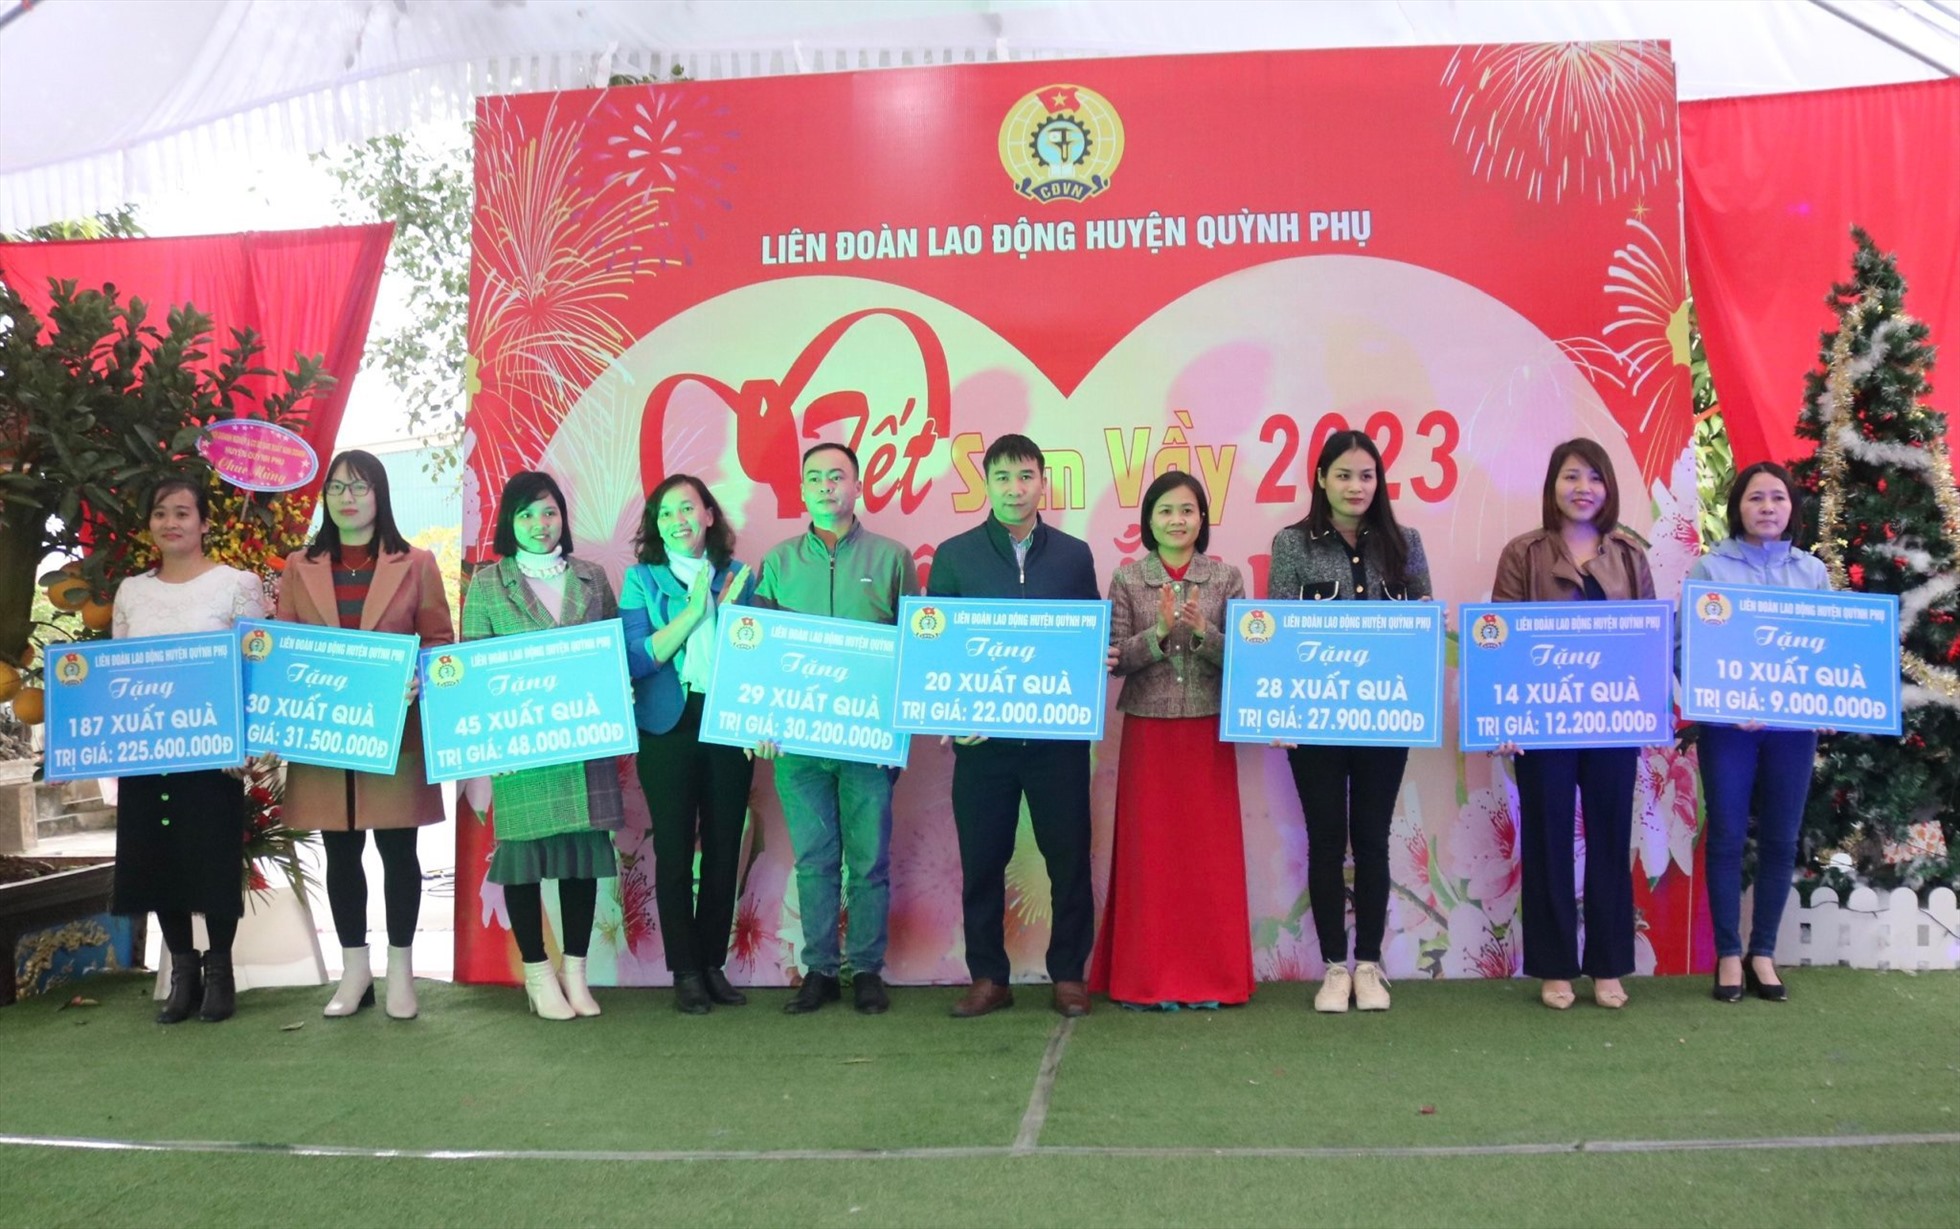 Lãnh đạo LĐLĐ tỉnh Thái Bình và LĐLĐ huyện Quỳnh phụ trao quà cho đại diện các CĐCS. Ảnh Bá Mạnh